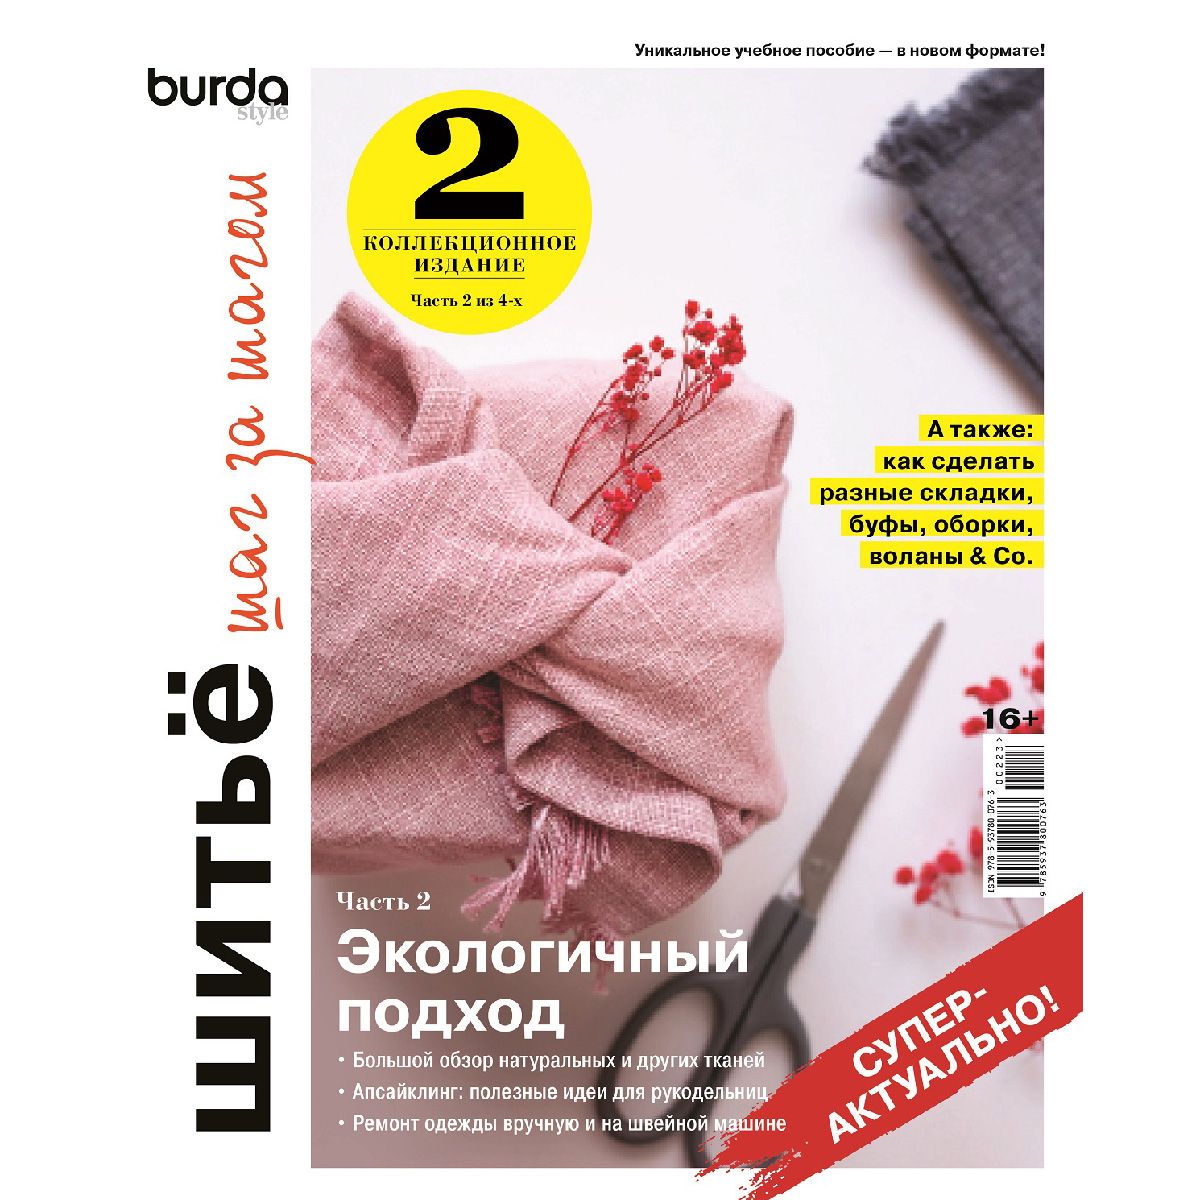 Учимся шить вместе с Burda: обзор полезных книг и журналов